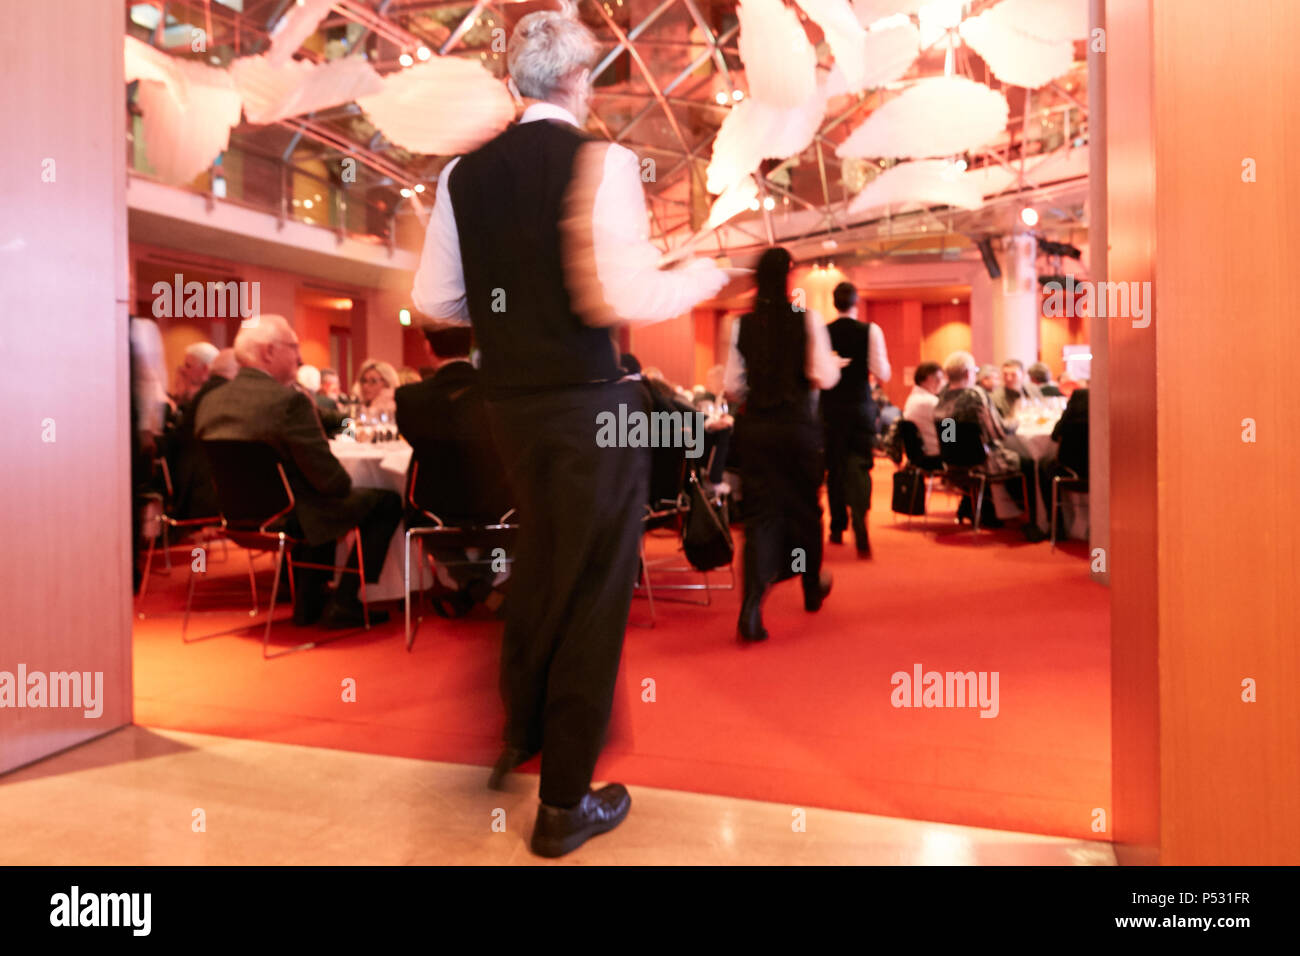 Berlin, Deutschland - Service in eleganter Schrank, während das Essen im Rahmen einer festlichen Abendveranstaltung. Stockfoto